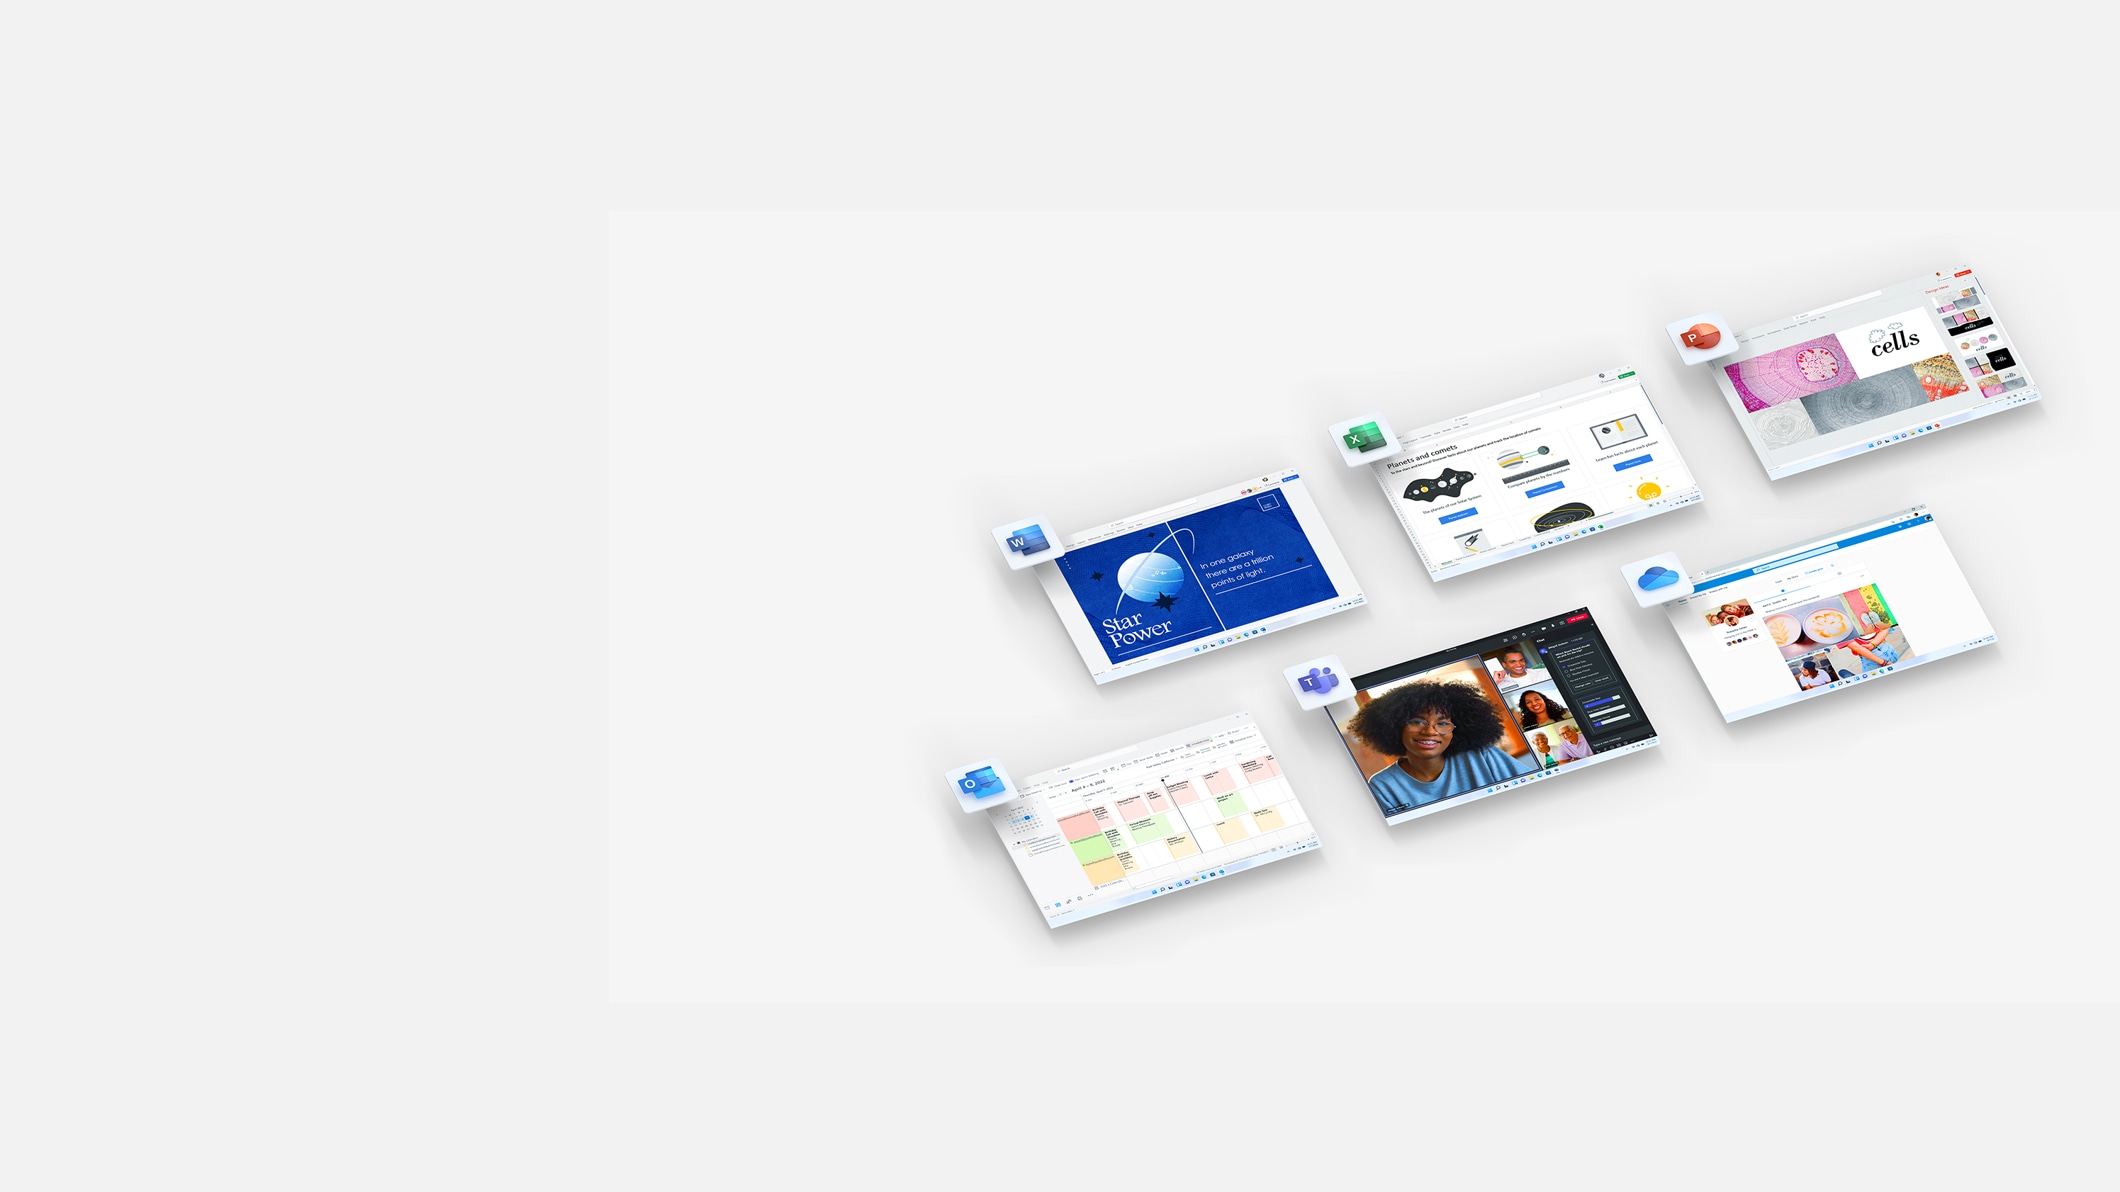 Снимки экрана Microsoft OneDrive, Excel, Word, PowerPoint и Outlook.